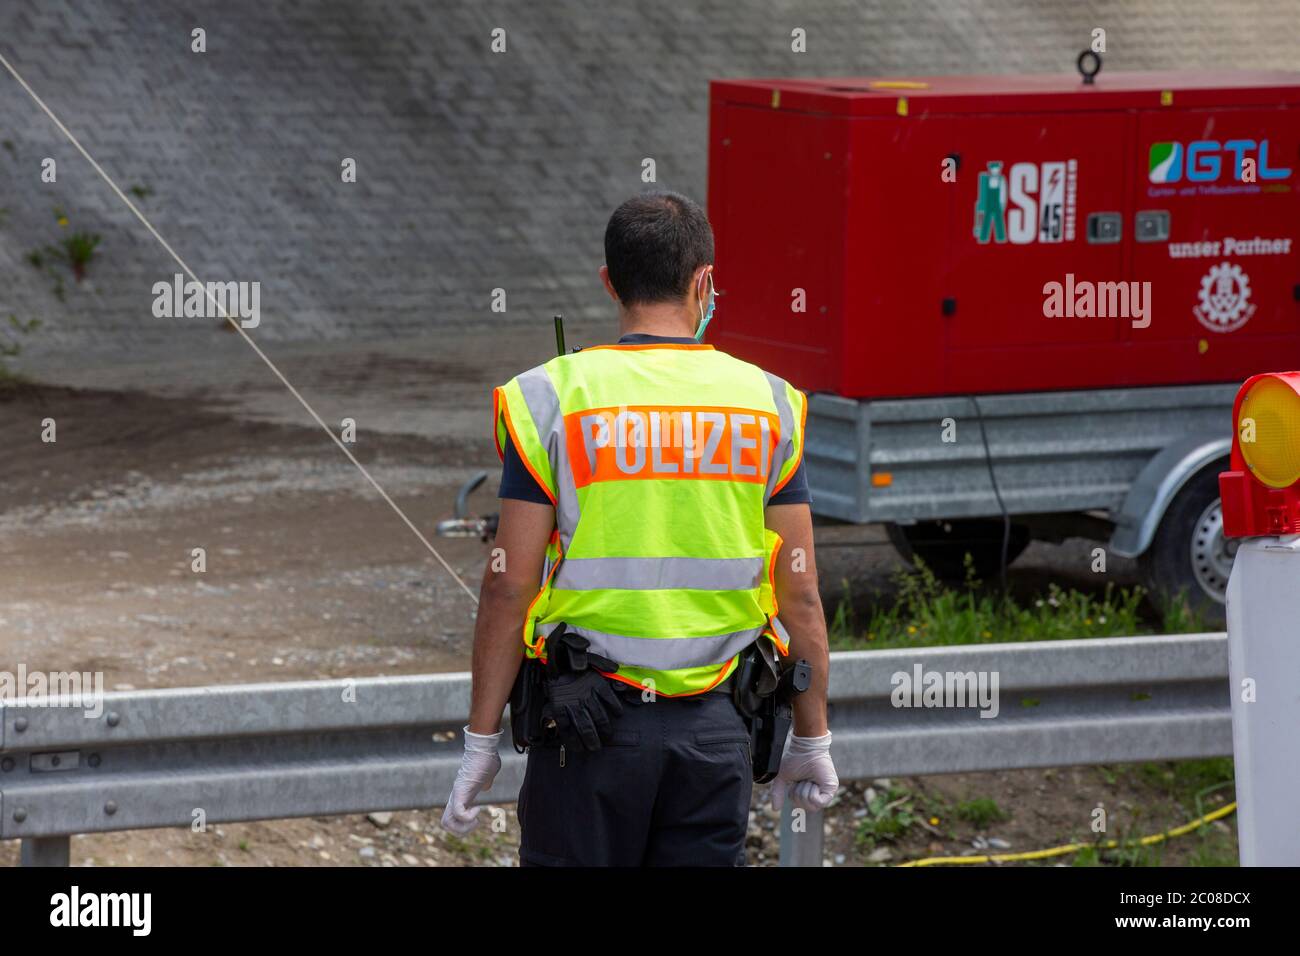 Kontrollen beim Grenzverkehr nach der Lockerung der Grenze Österreich - Deutschland. Lindau,16.05.2020 Stock Photo